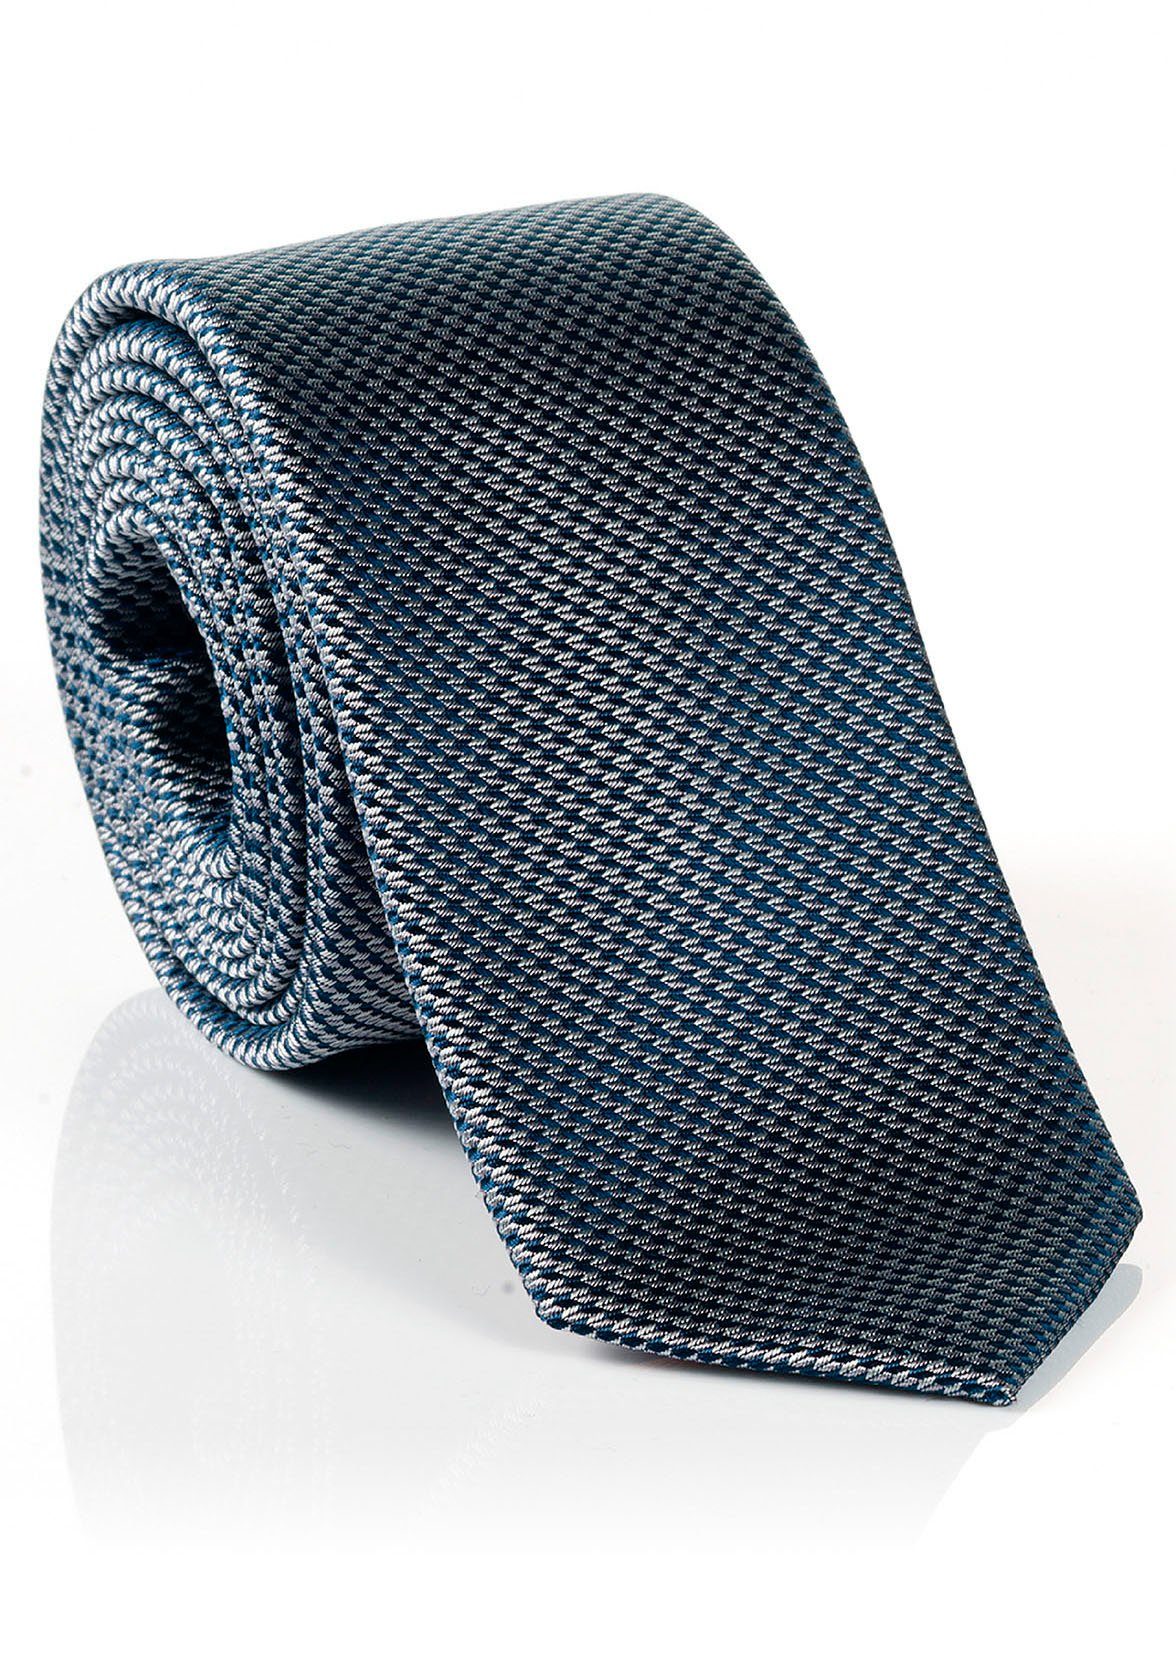 MONTI Krawatte LANDO Reine Seide, Minimal-Muster, Hochwertig verarbeitete  Seidenkrawatte mit hohem Tragekomfort